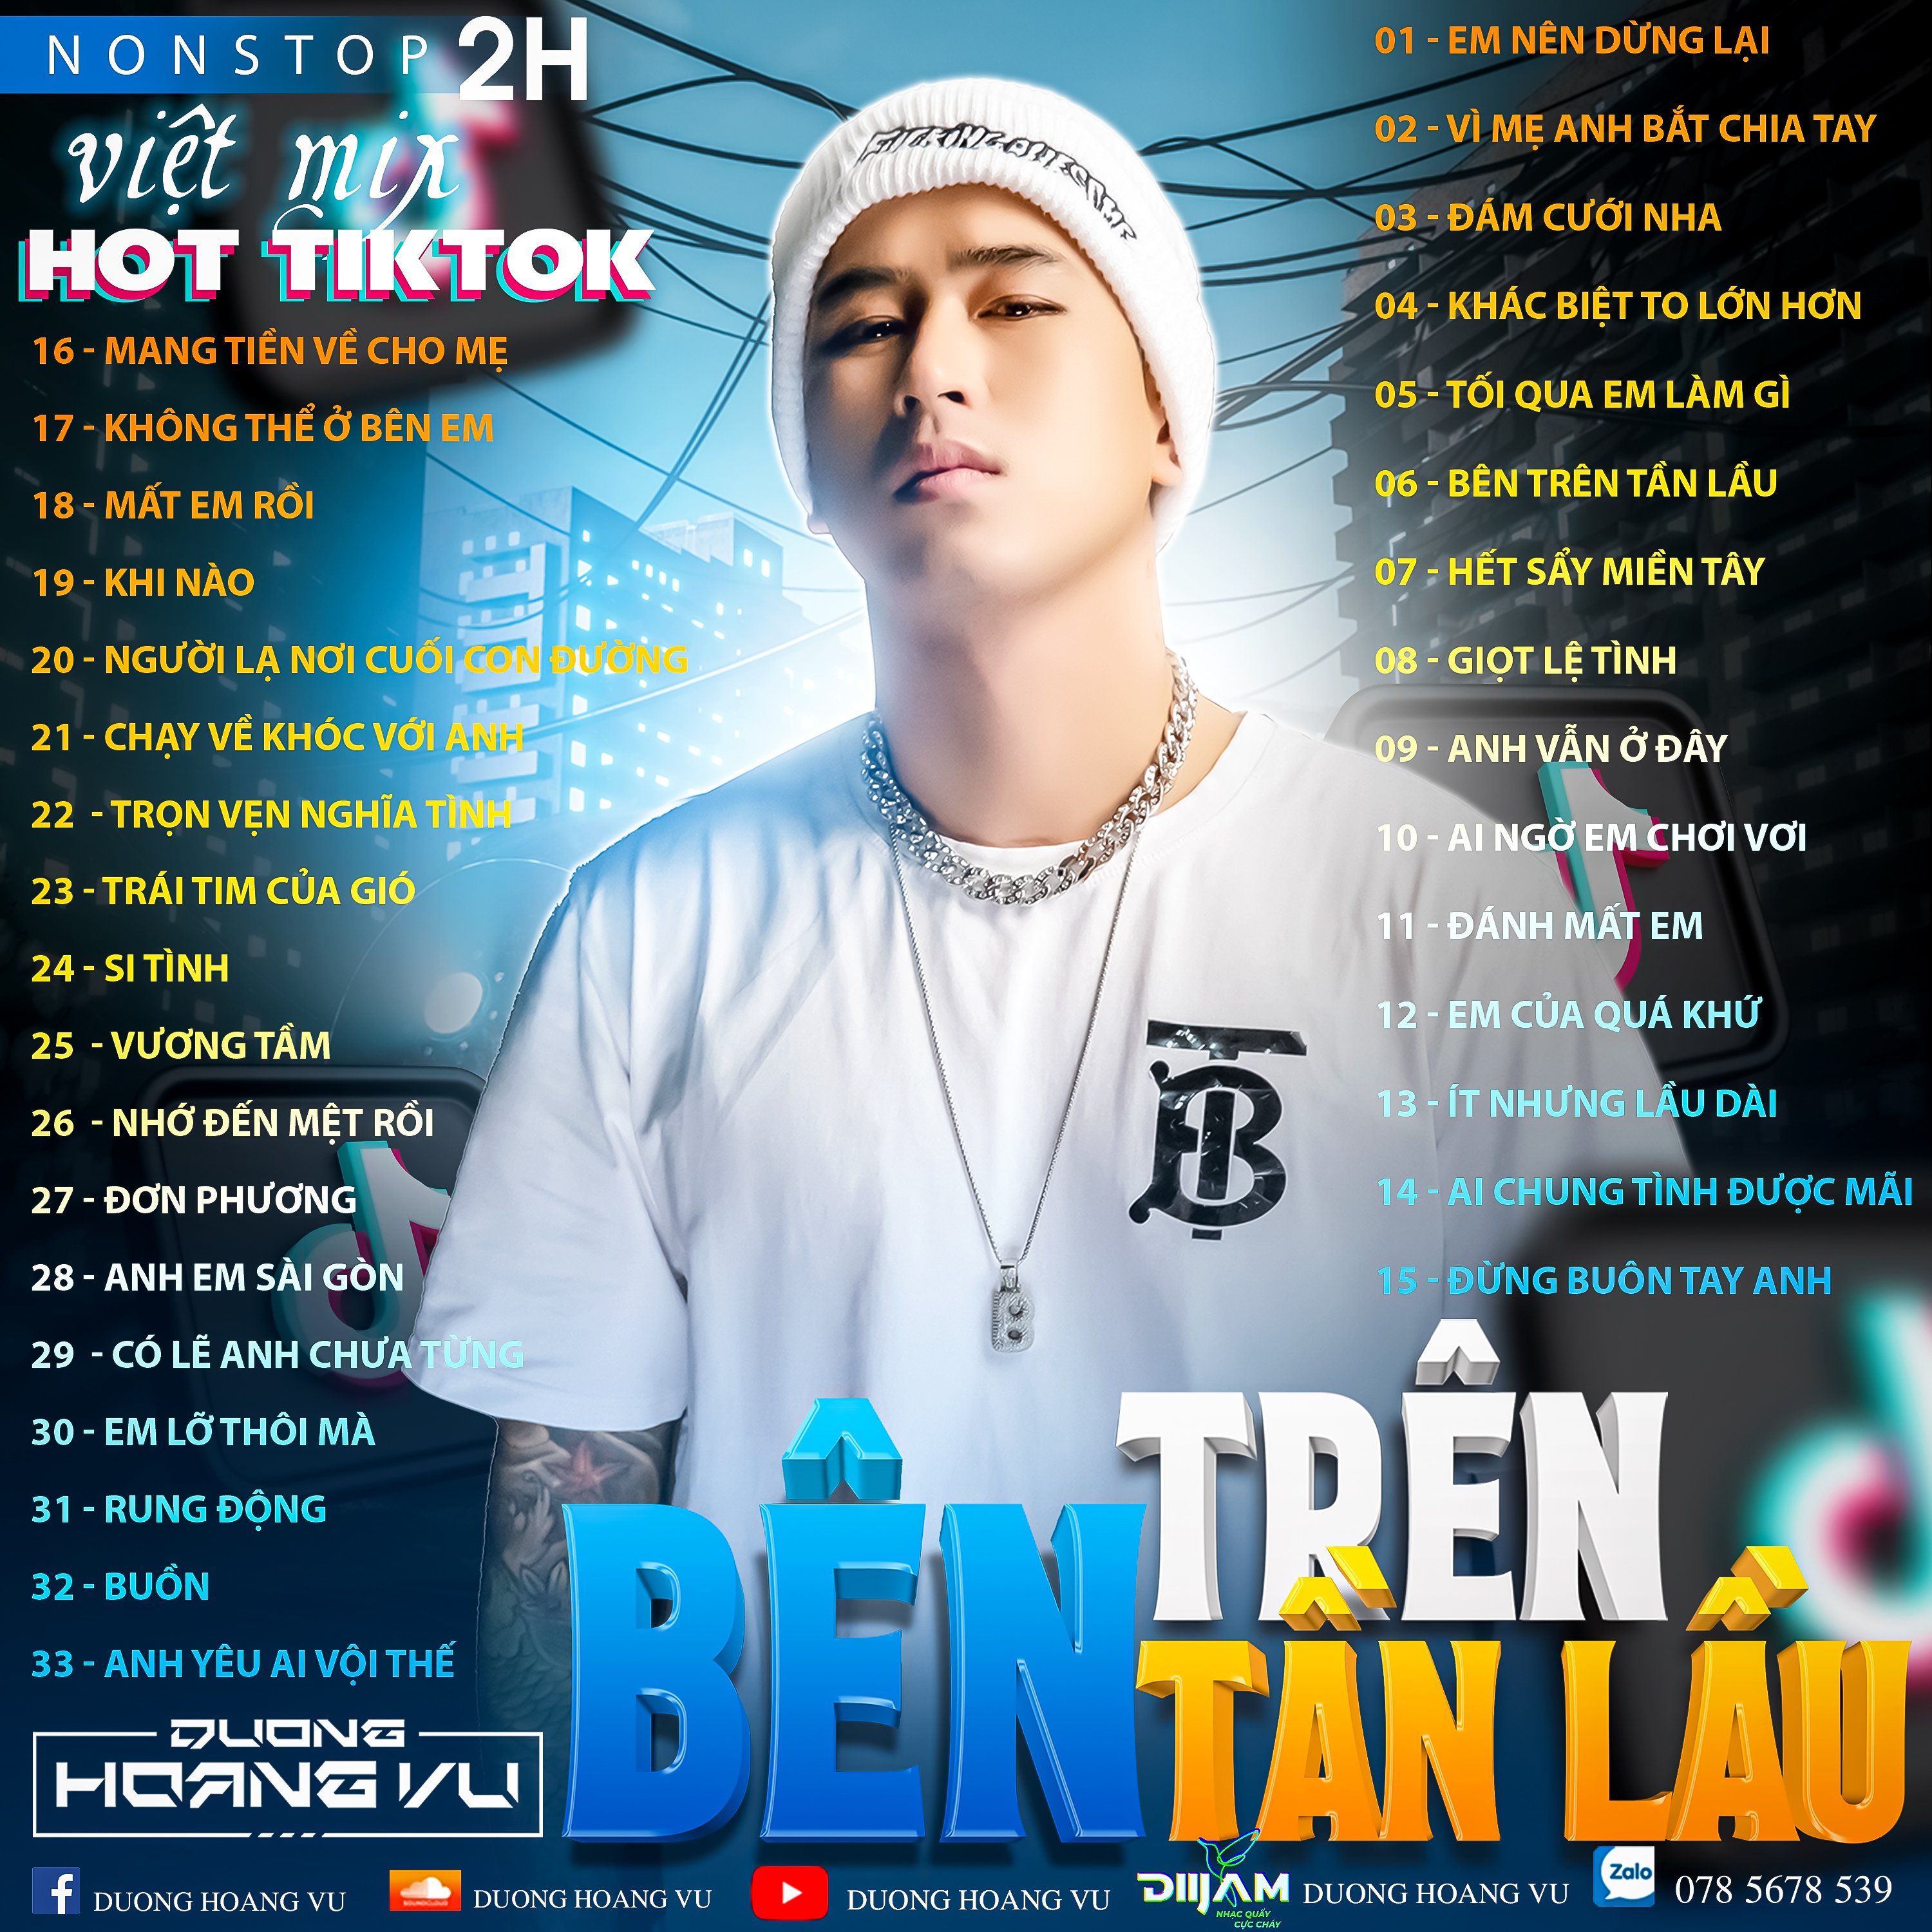 ¡Descargar (Demo ) Nst Việt Mix Hot tiktok 2h - 2022 - DJ Dương Hoàng Vũ Mix Mua Full IB Zalo 078.5678.539